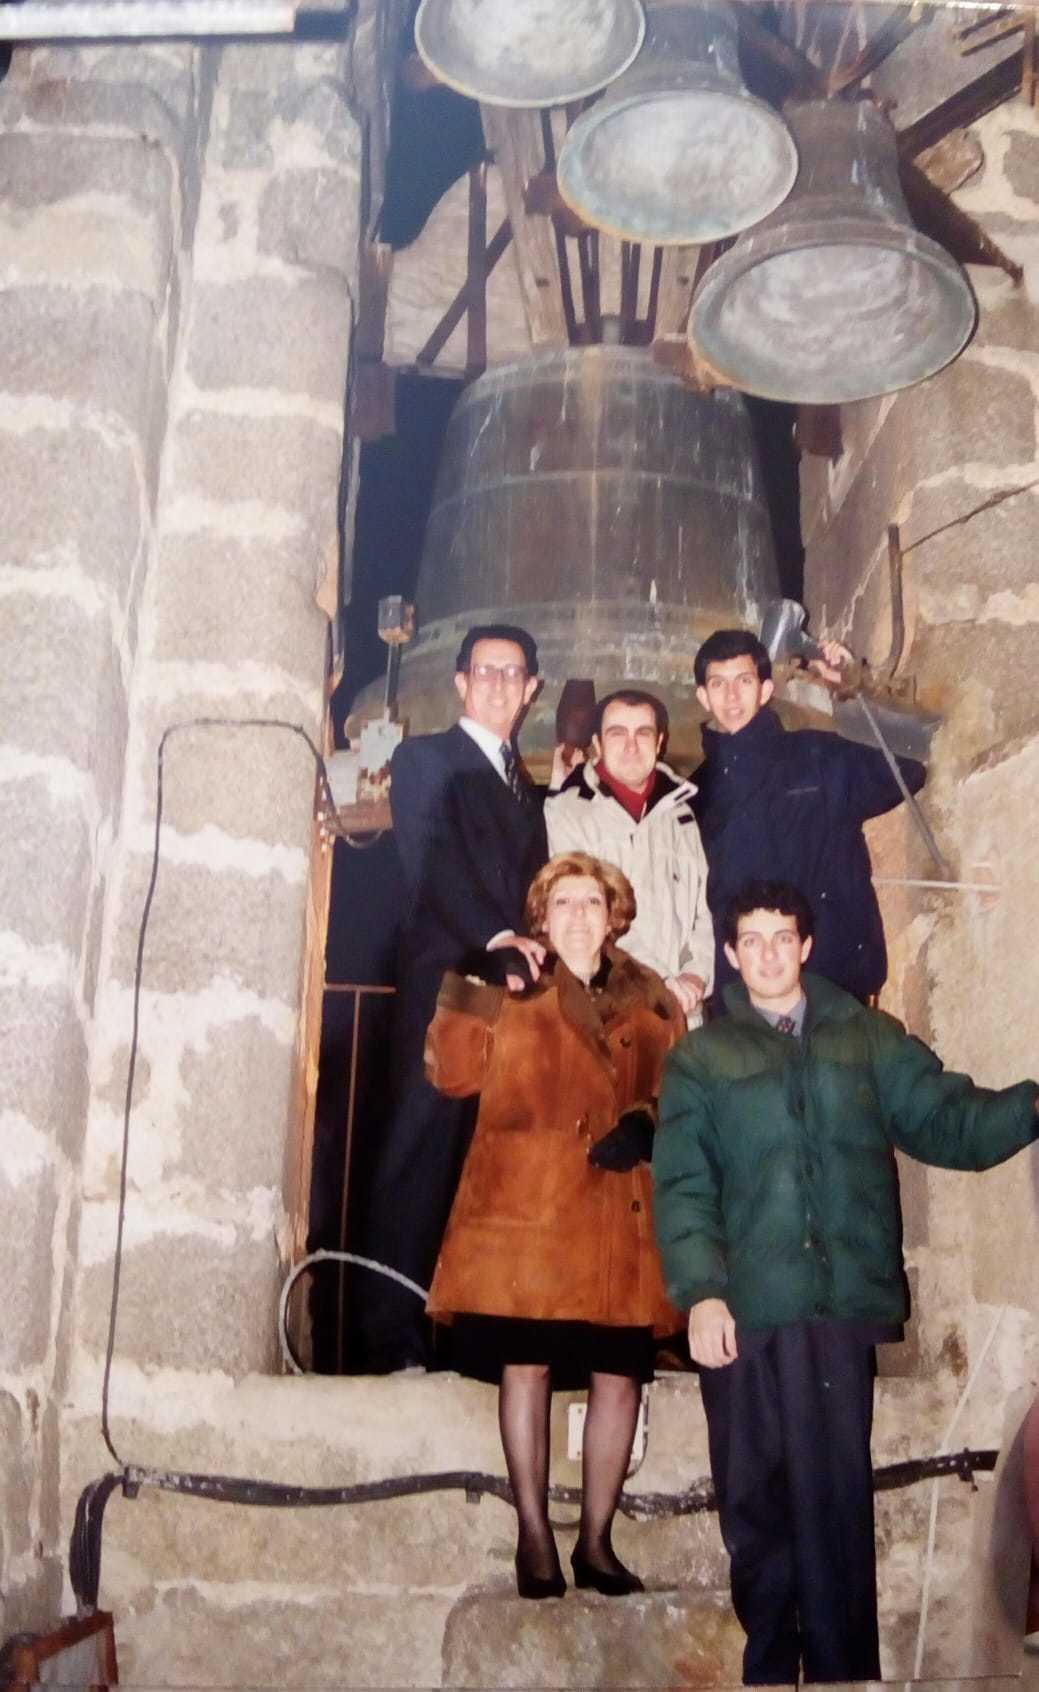 Arriba, Maxi padre, Diego (su sobrino) y Maxi hijo;  abajo, Ana y Lucas, en la Nochevieja de 2000 en el campanario.